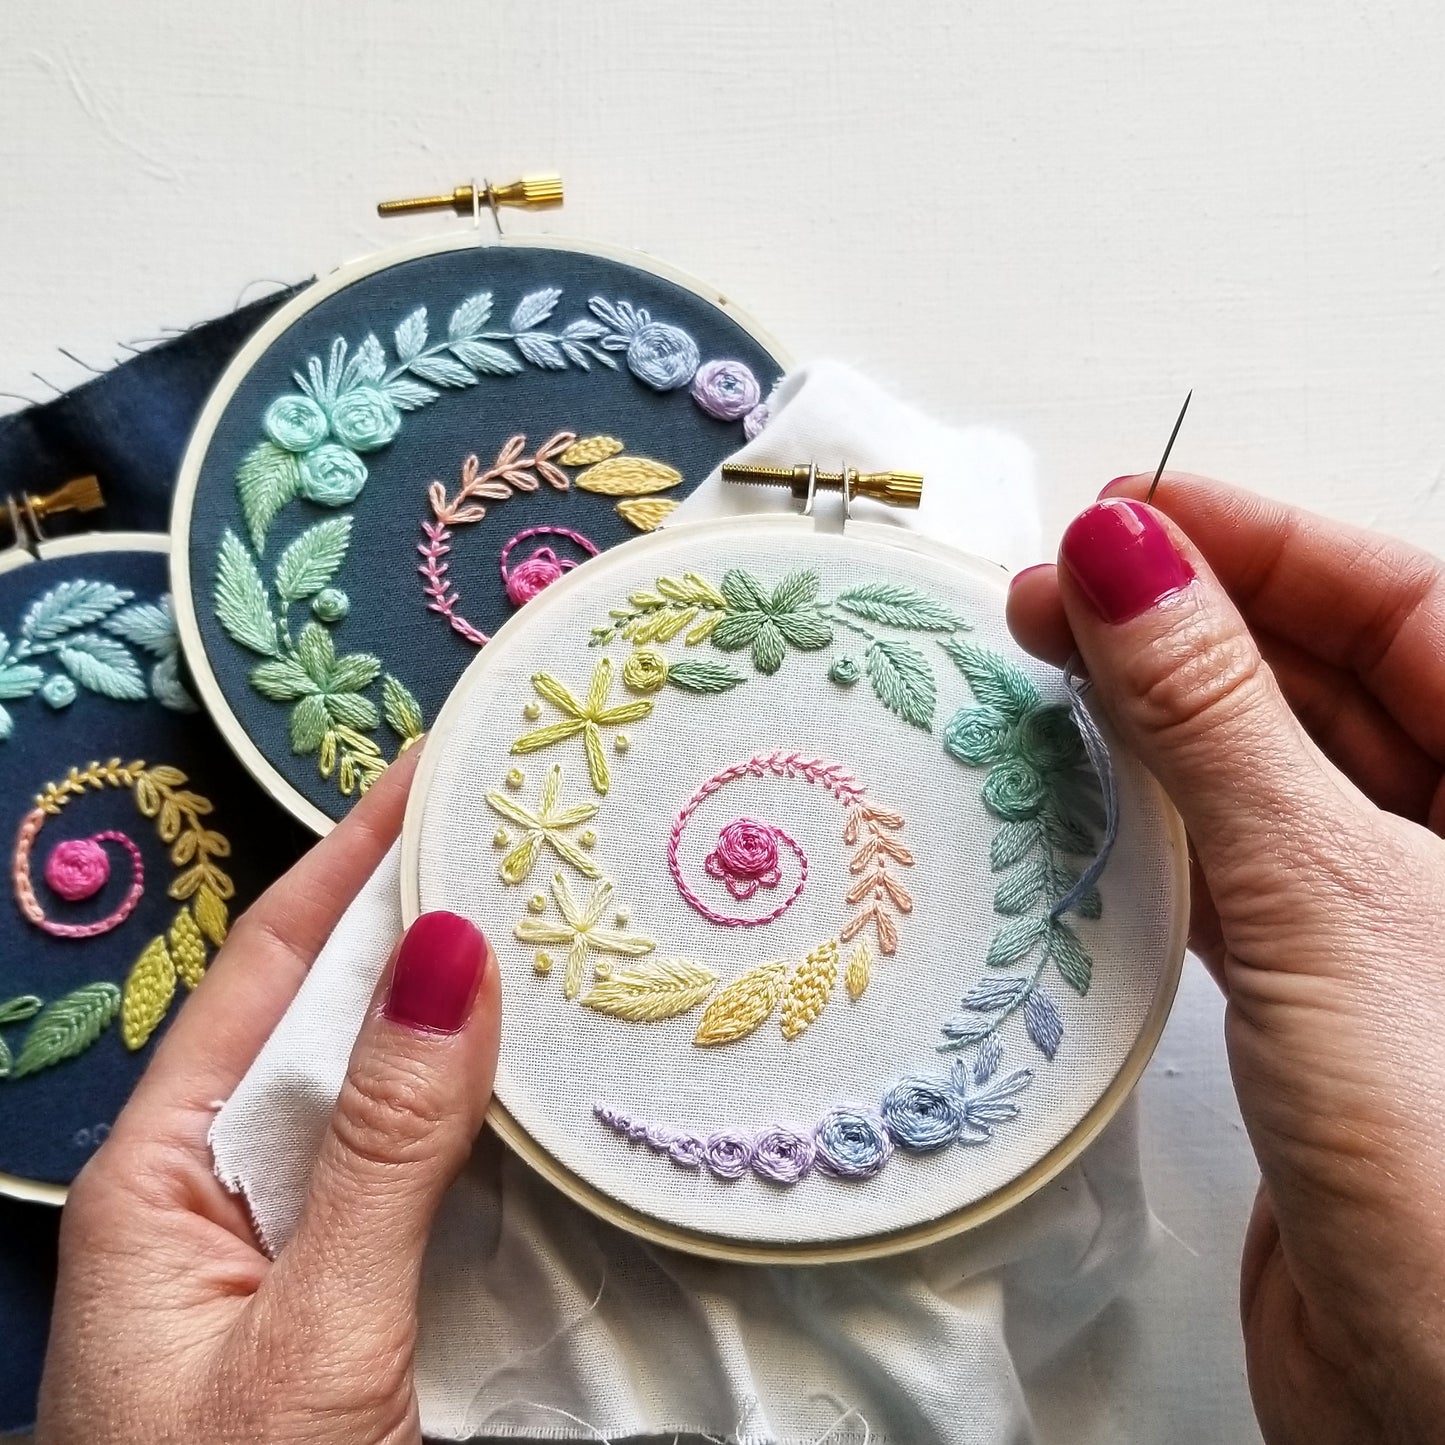 Spiral Sampler Beginner Embroidery Kit